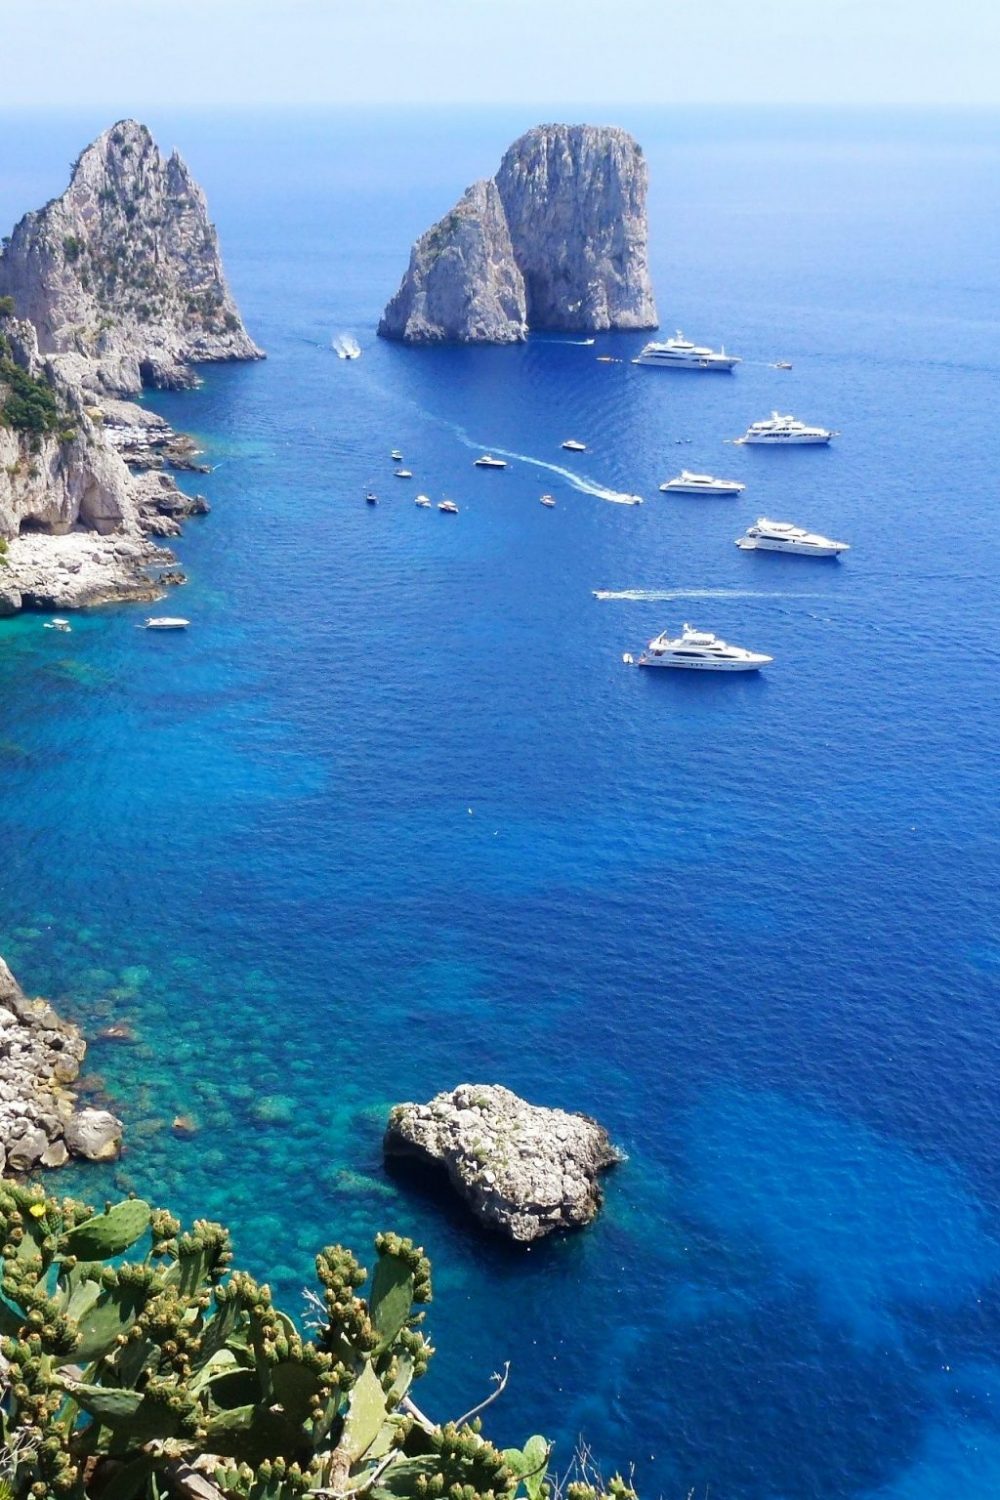 Roteiro completo de 1 dia em Capri na Itália